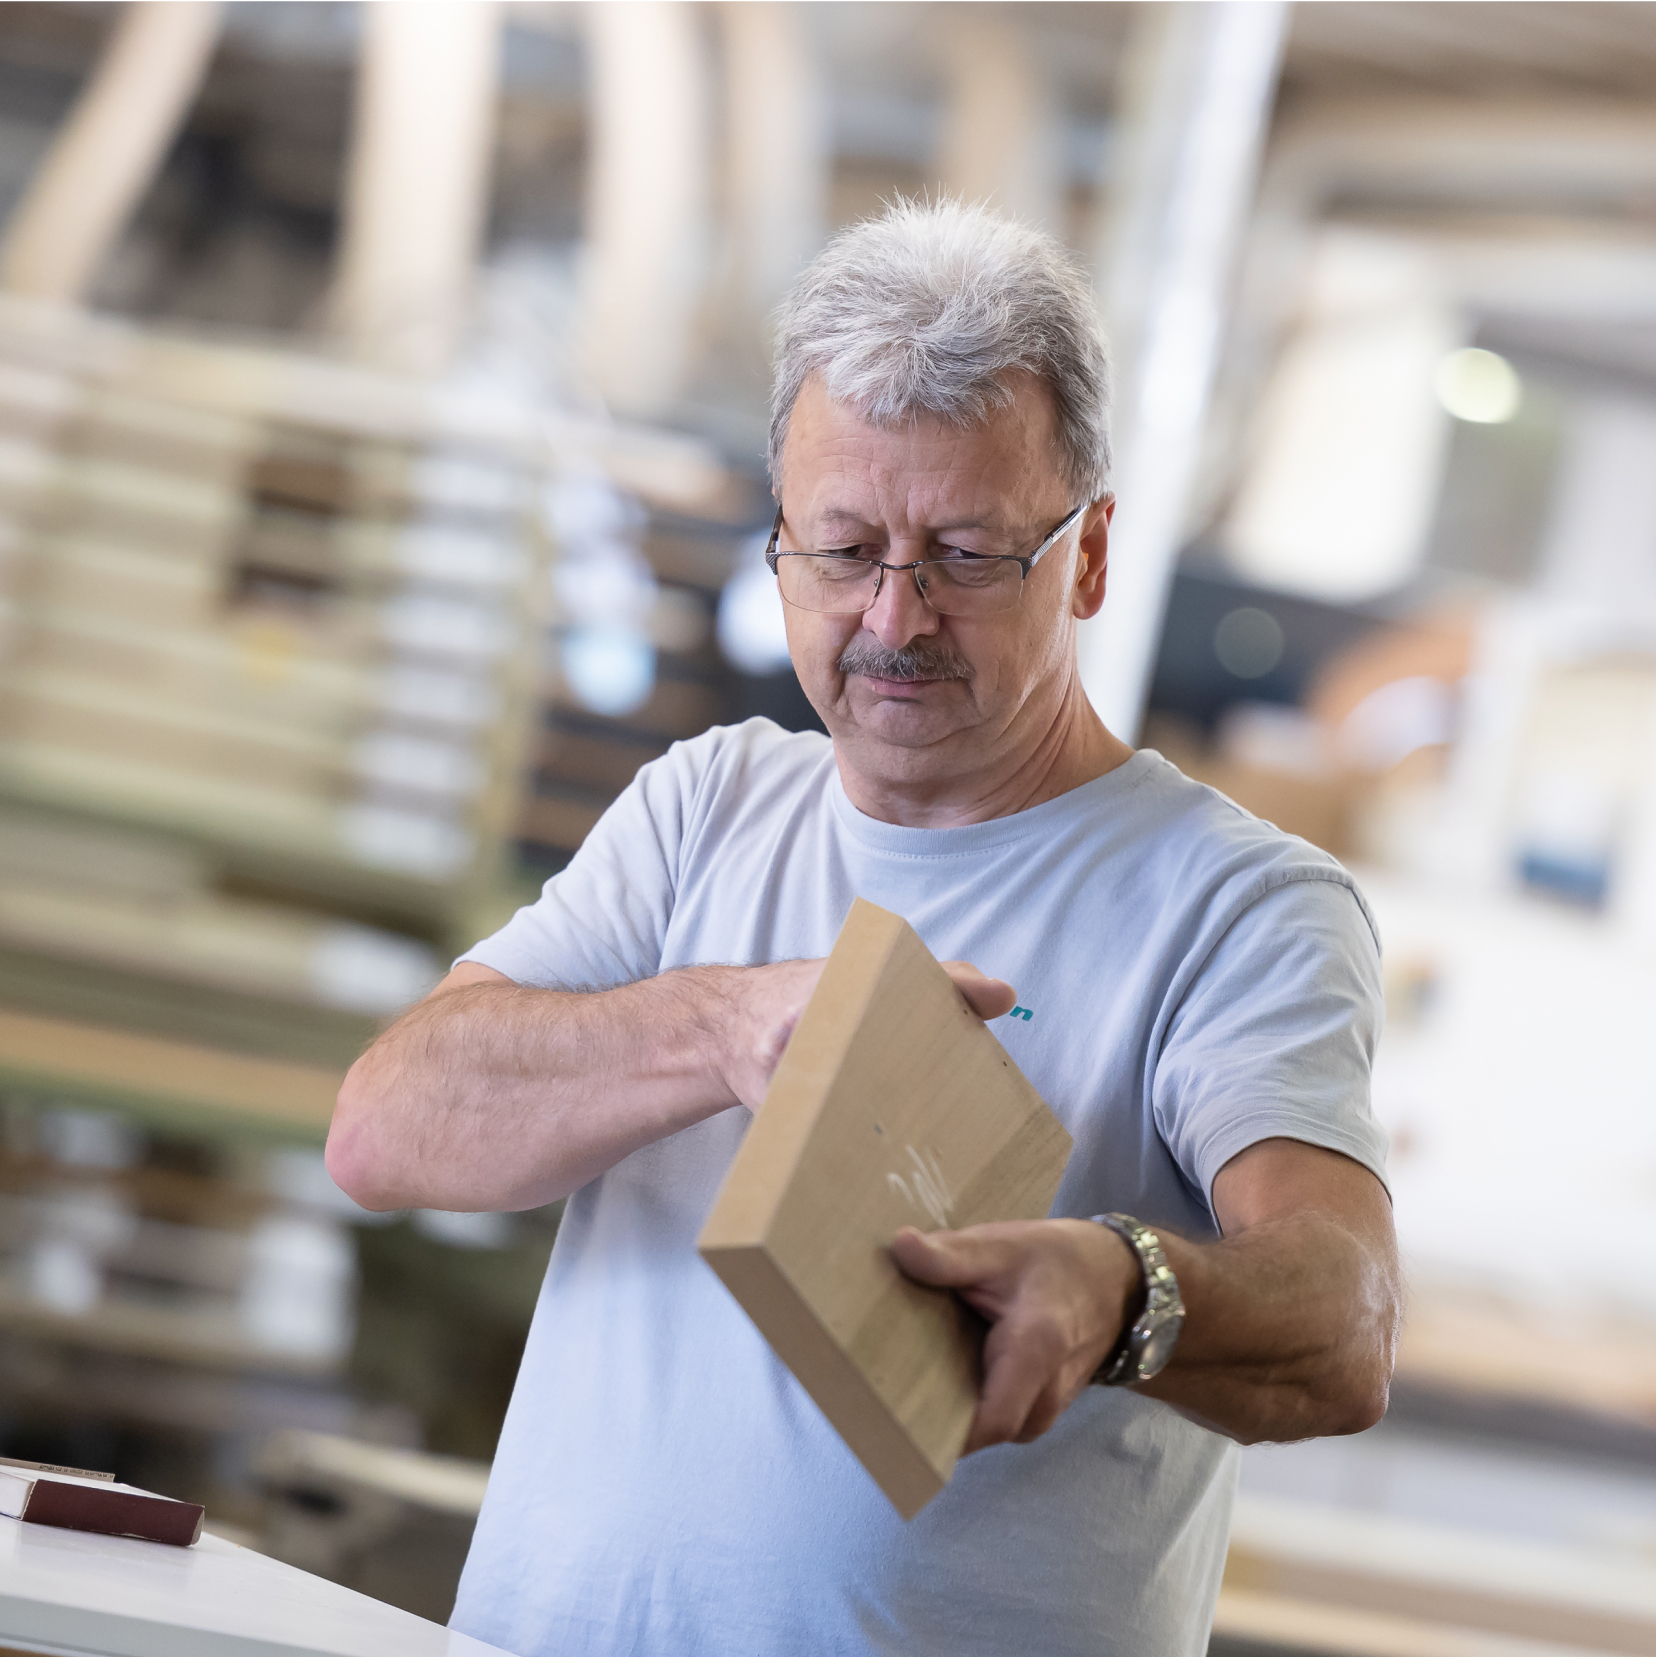 Handwerker inspiziert einen Holzblock mit Fokus und Fachwissen in einer Werkstattumgebung.